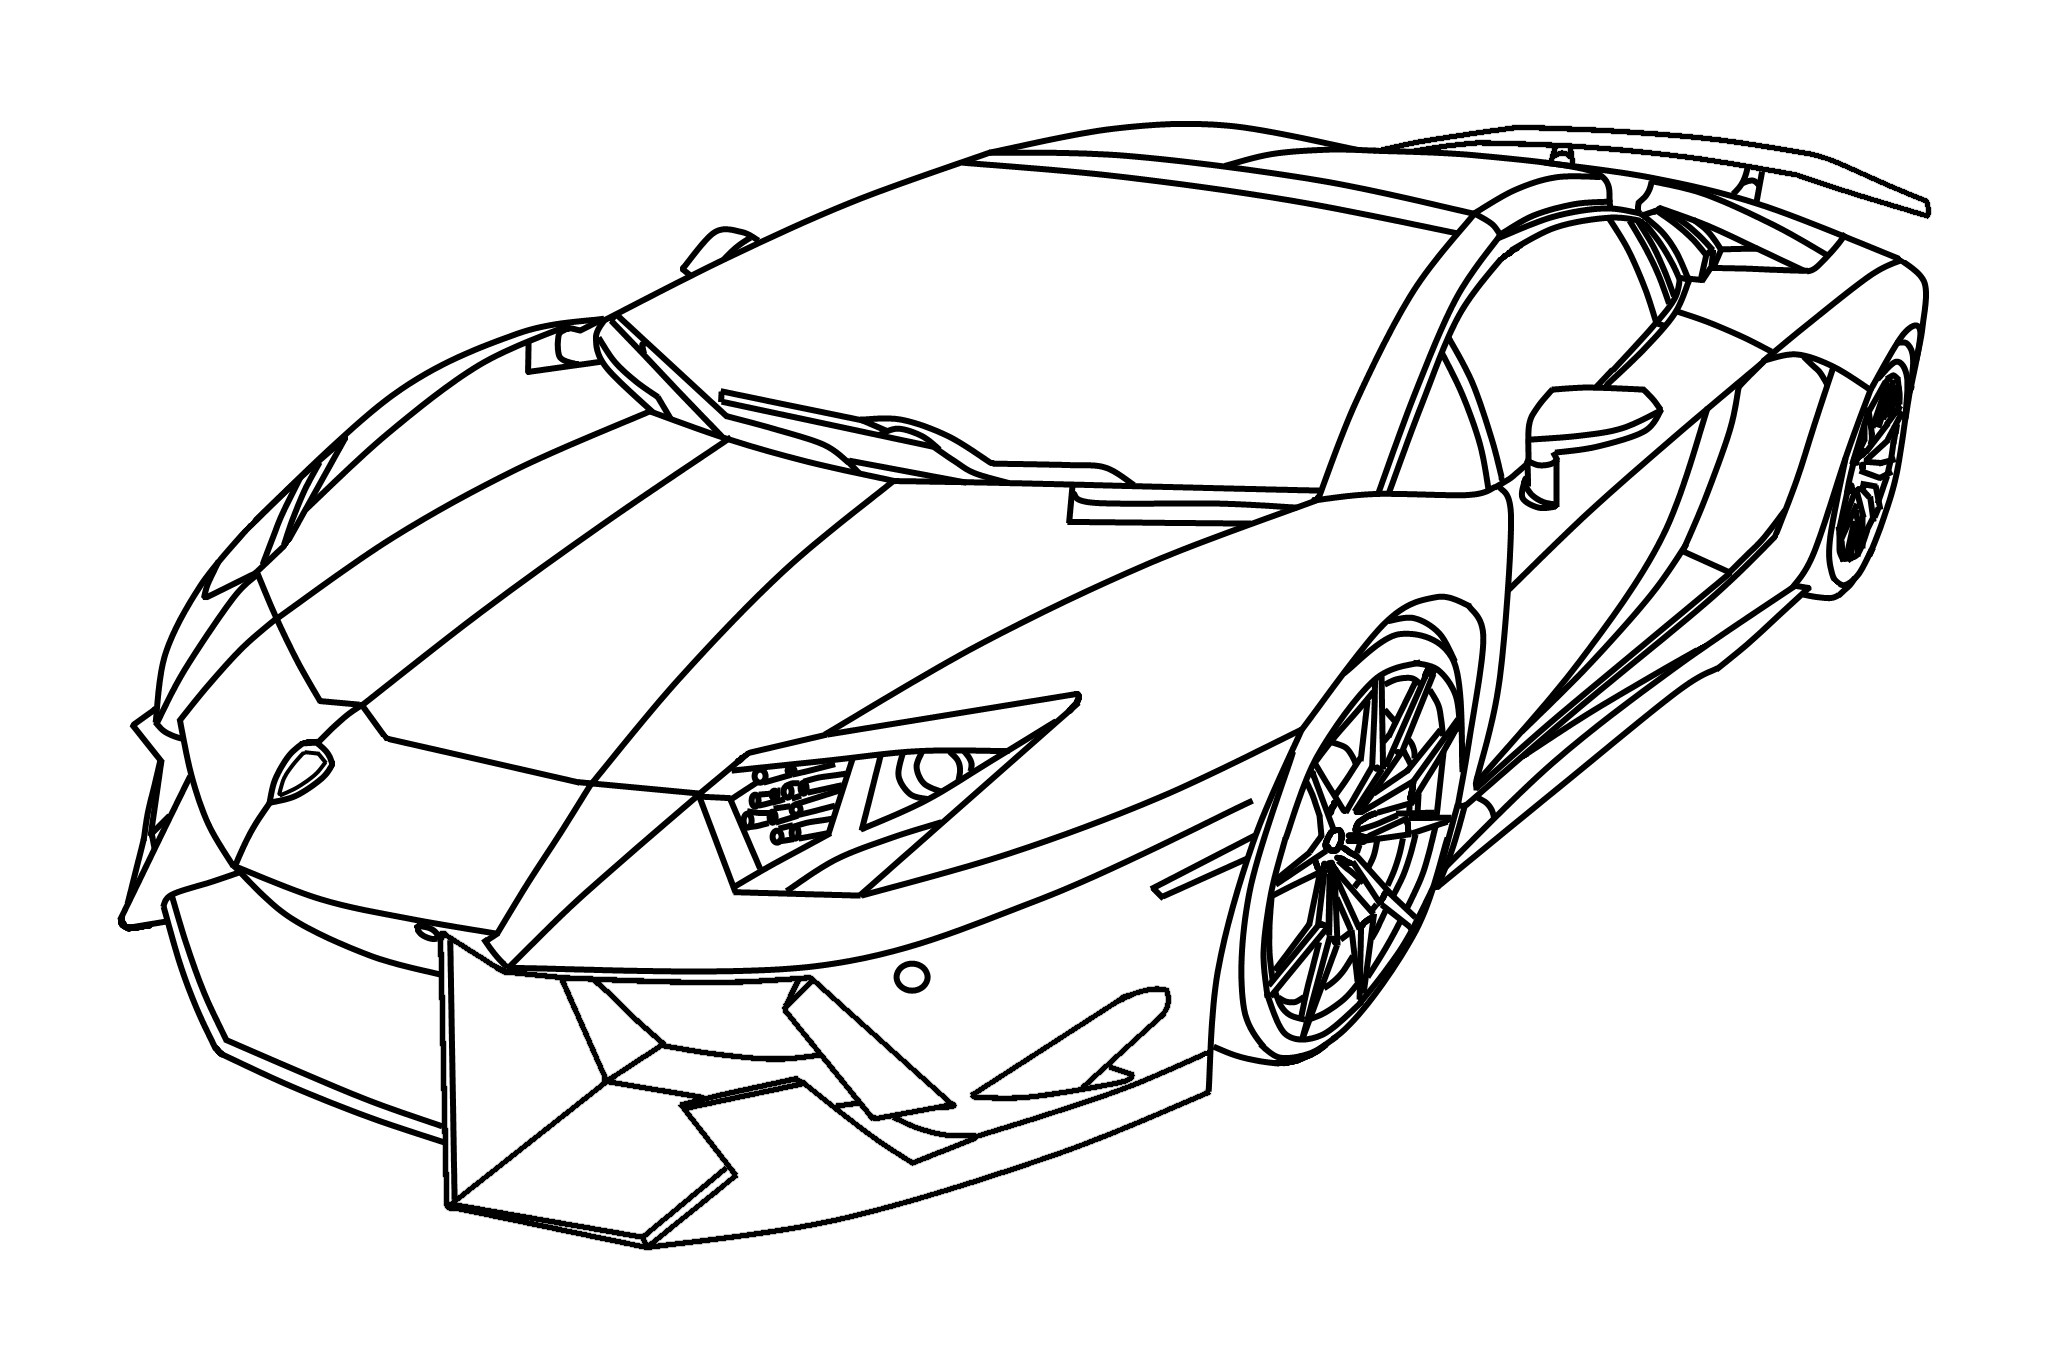 Lamborghini Reventon Drawing at GetDrawings | Free download